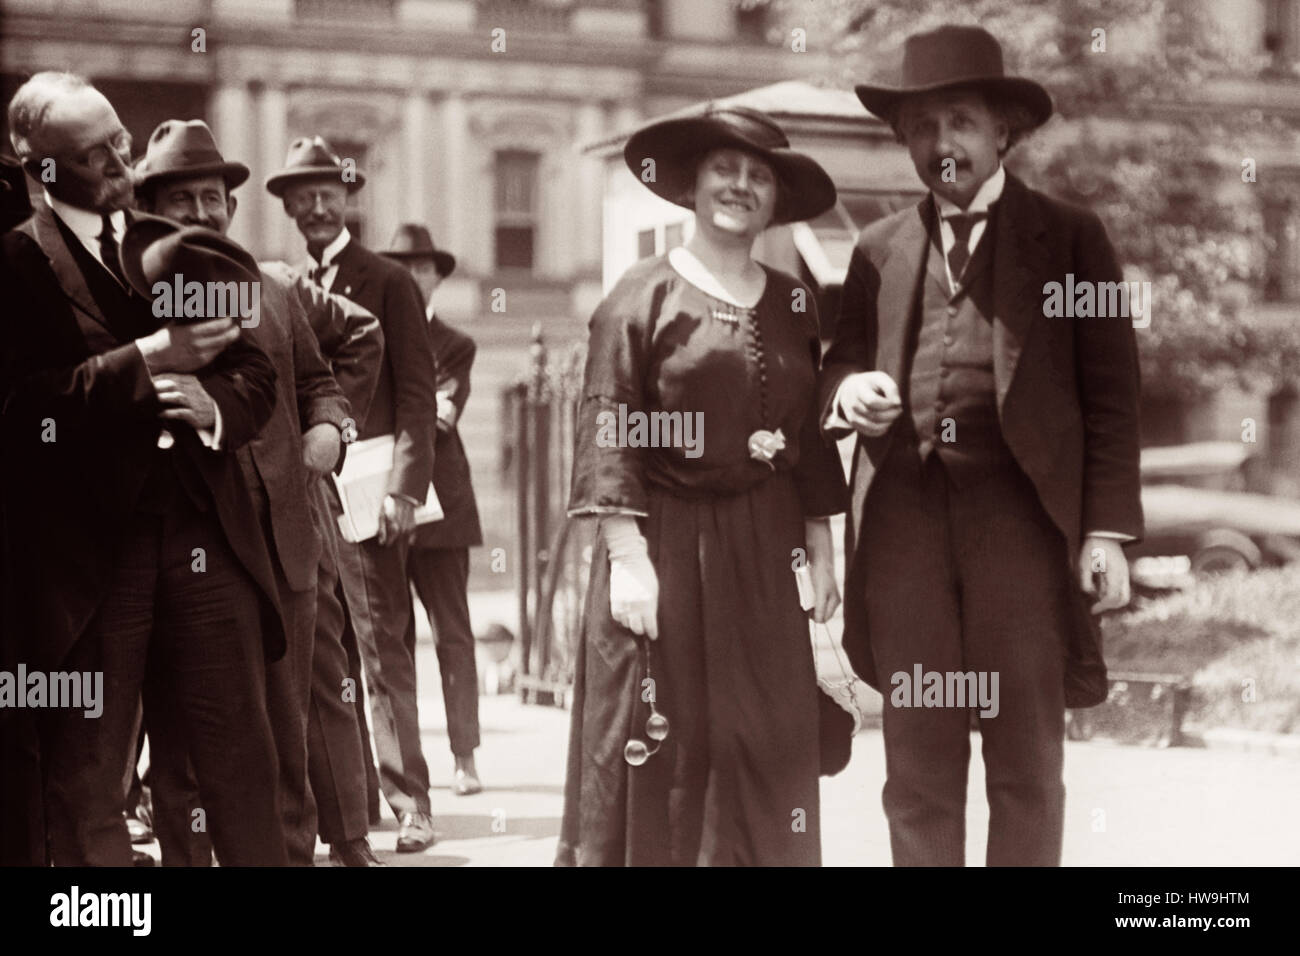 Albert Einstein et sa femme Elsa en face de l'État, la guerre, et la Marine Building à Washington, D.C. Au cours de leur voyage de 1921 aux États-Unis. 1921 est l'année Einstein a reçu le Prix Nobel de physique. Banque D'Images